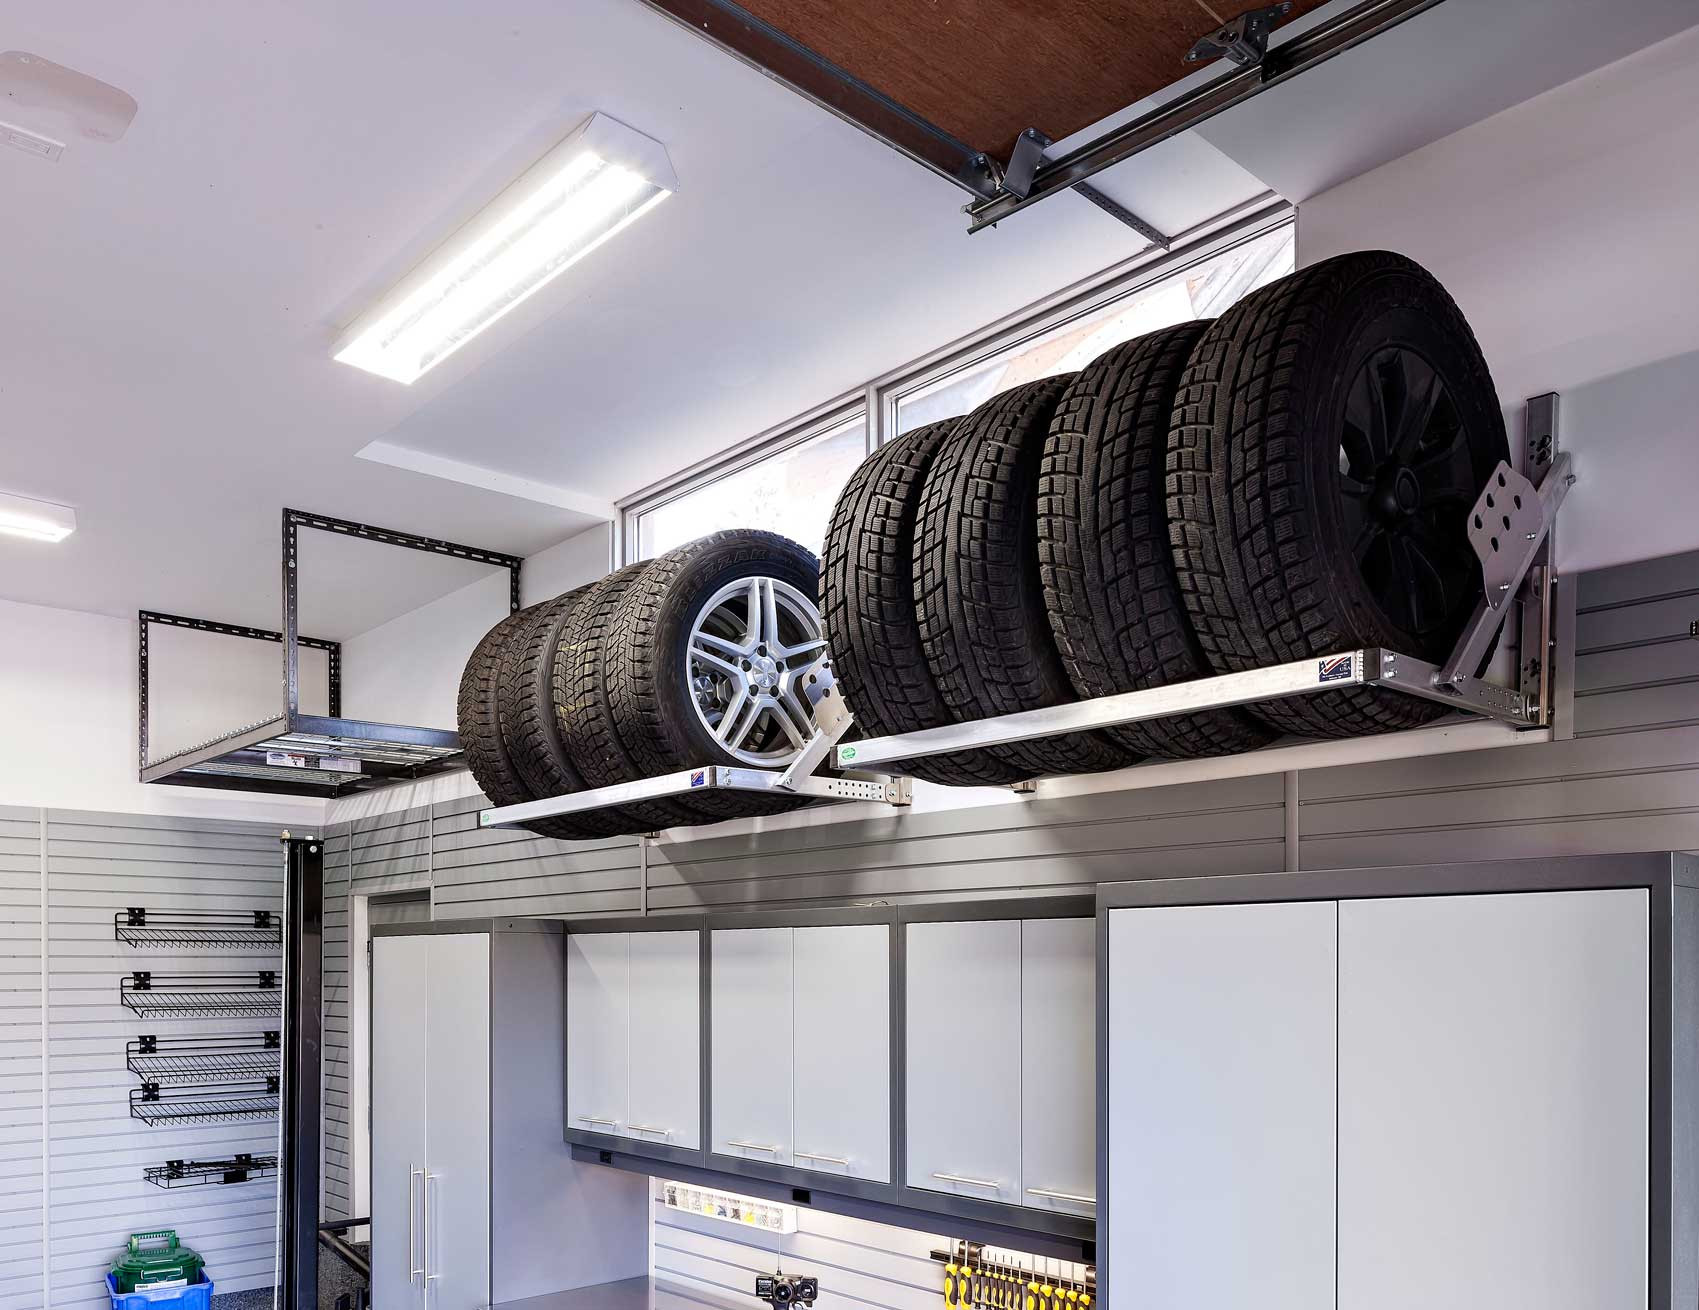 Overhead Garage Organization
 How To Utilize Your Underused Garage Overhead Storage Space